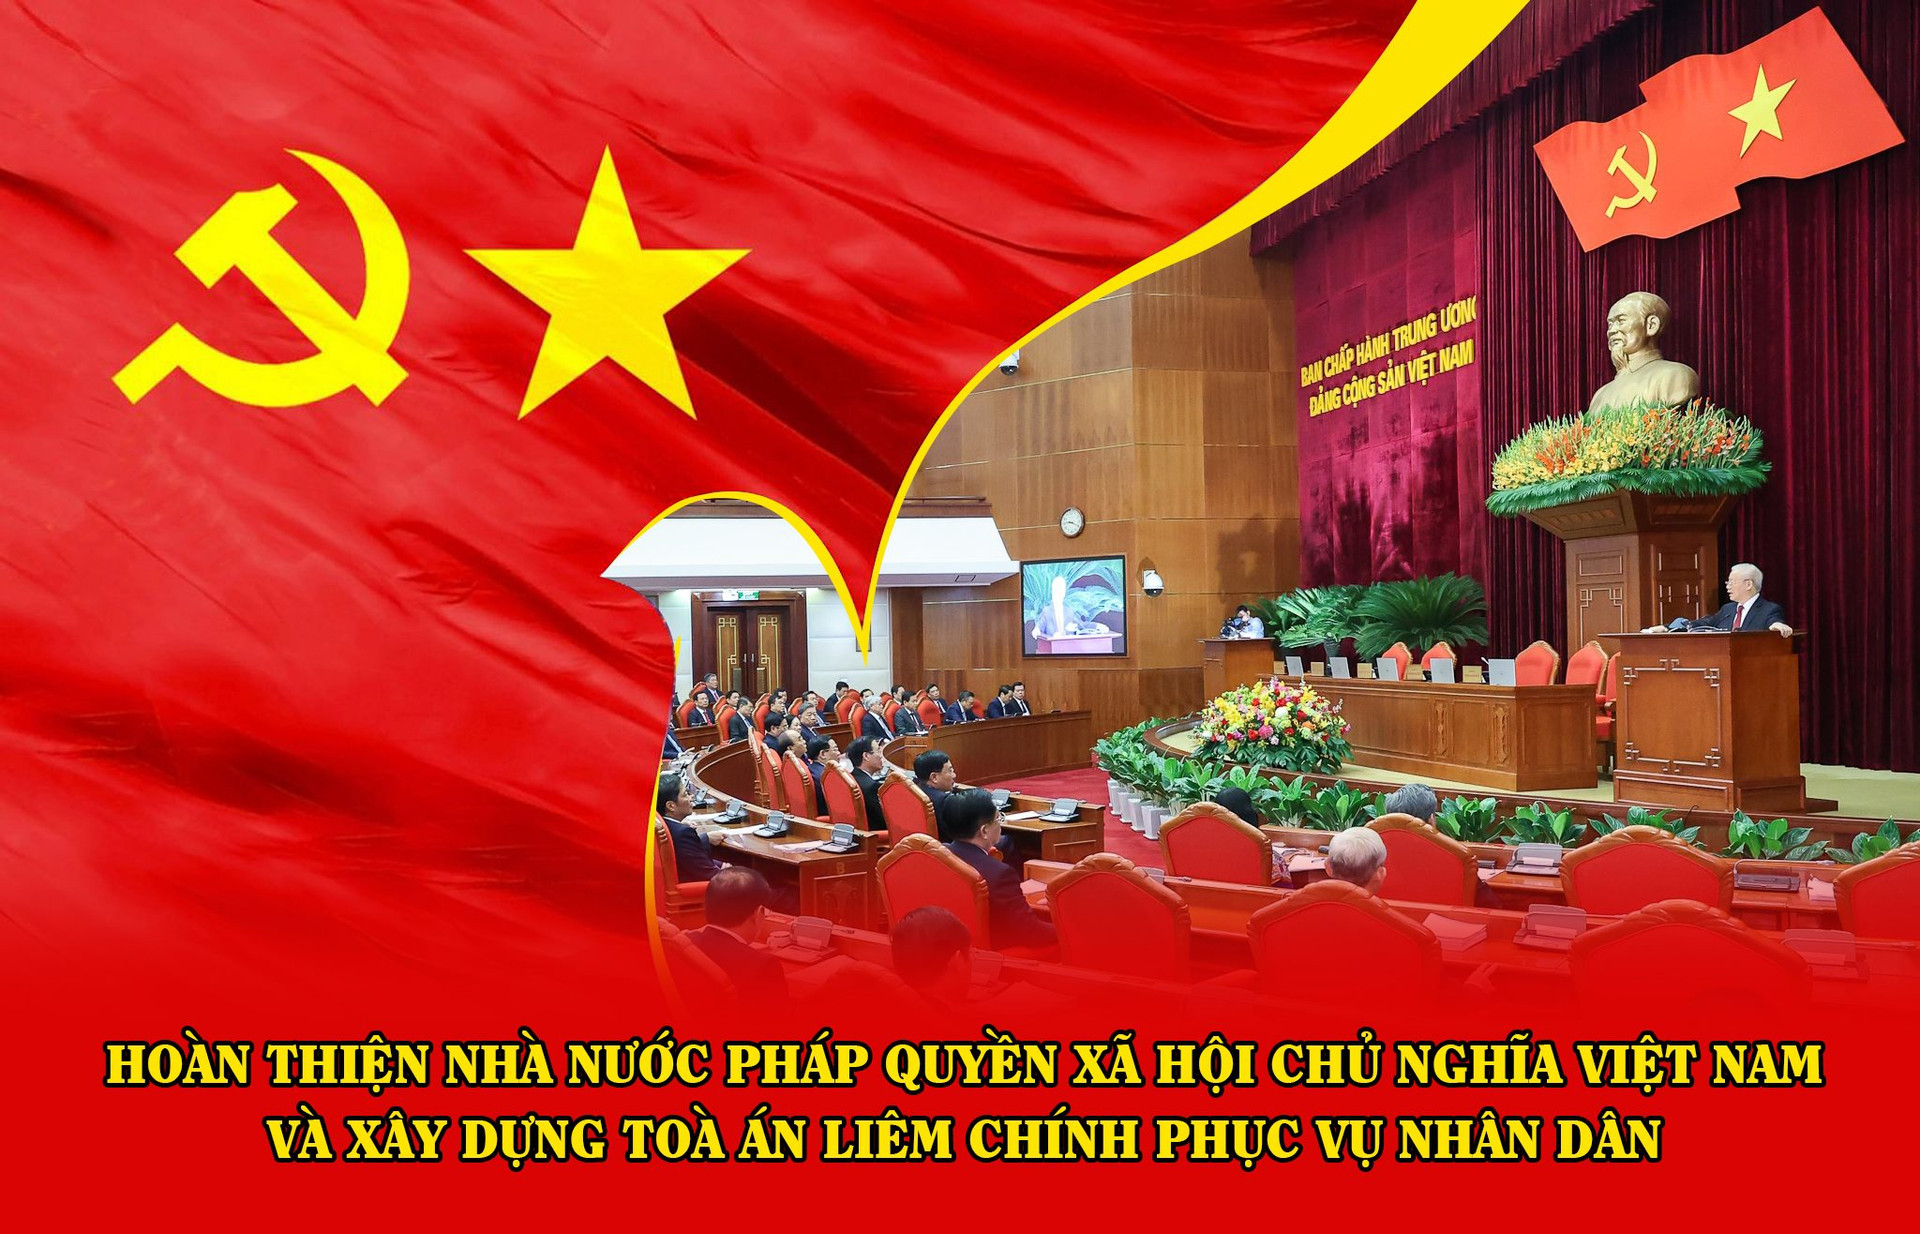 Thông Tin Tổng Hợp về Nhà nước Pháp Quyền Xã Hội Chủ Nghĩa Việt Nam